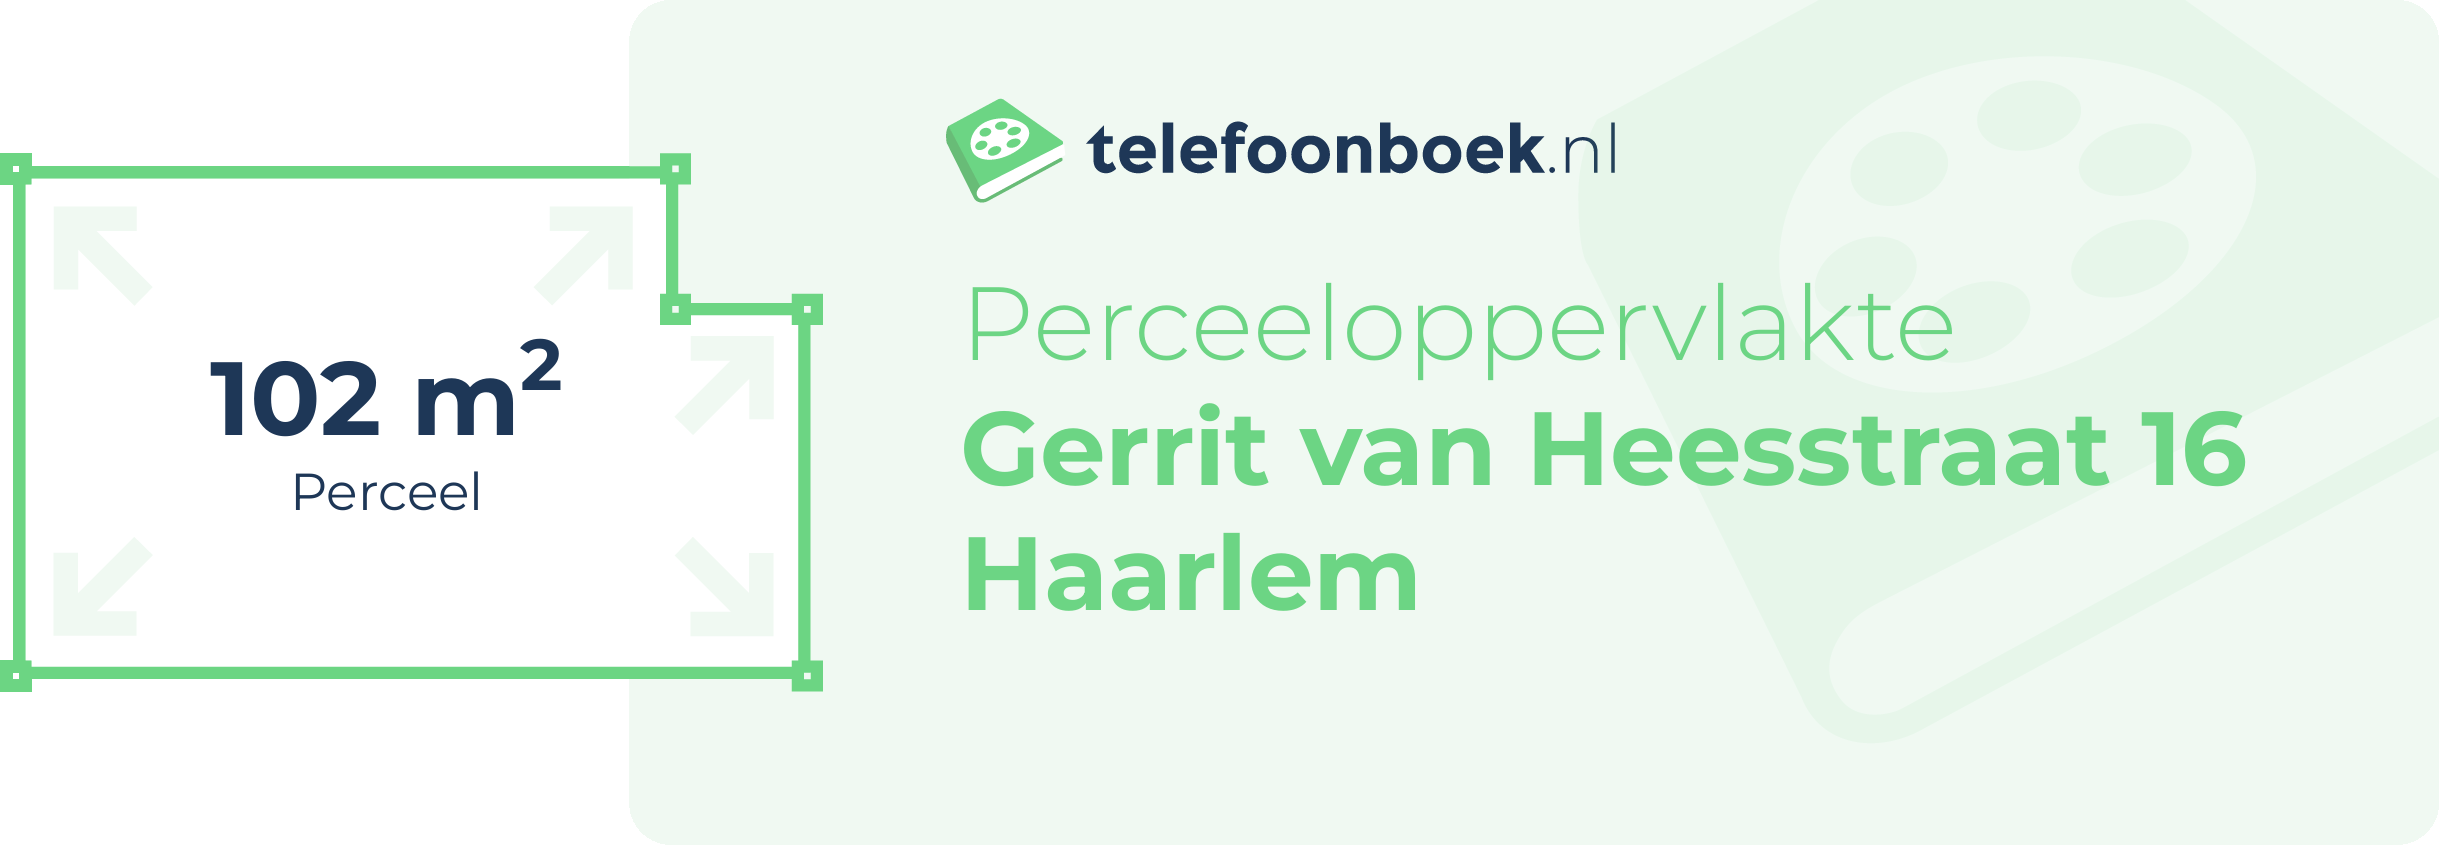 Perceeloppervlakte Gerrit Van Heesstraat 16 Haarlem